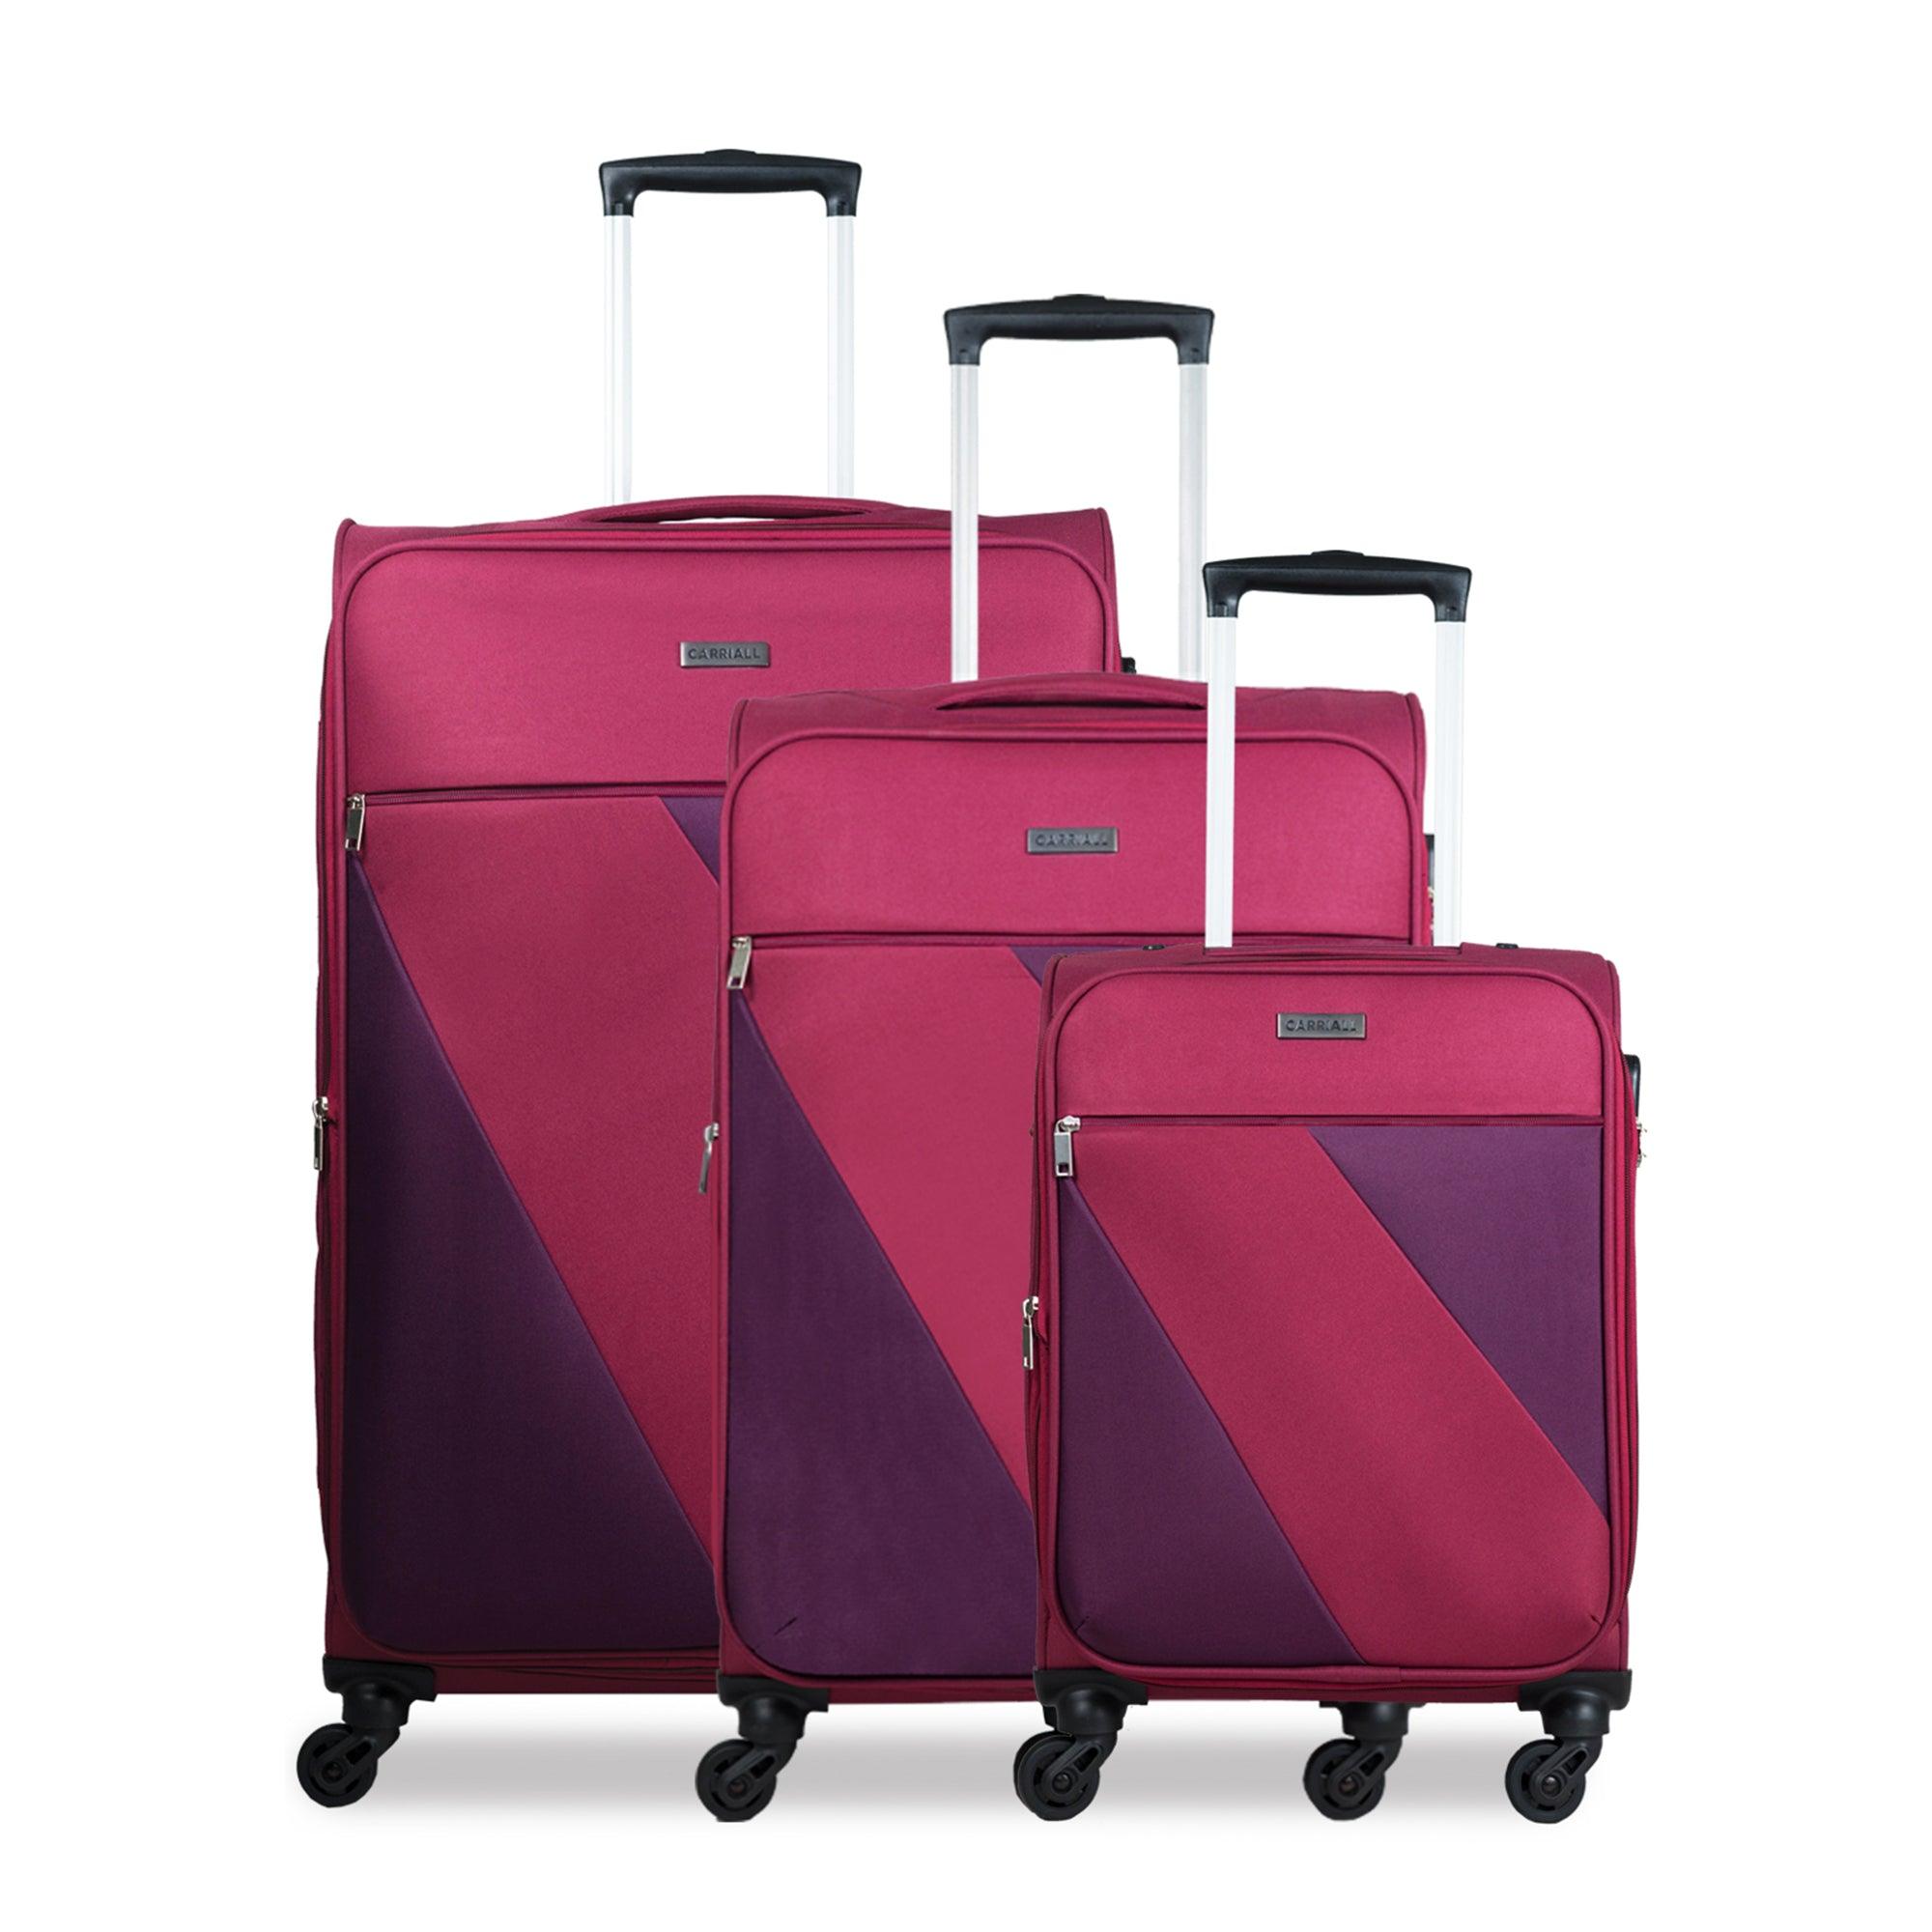 Ace Luggage Set of 3